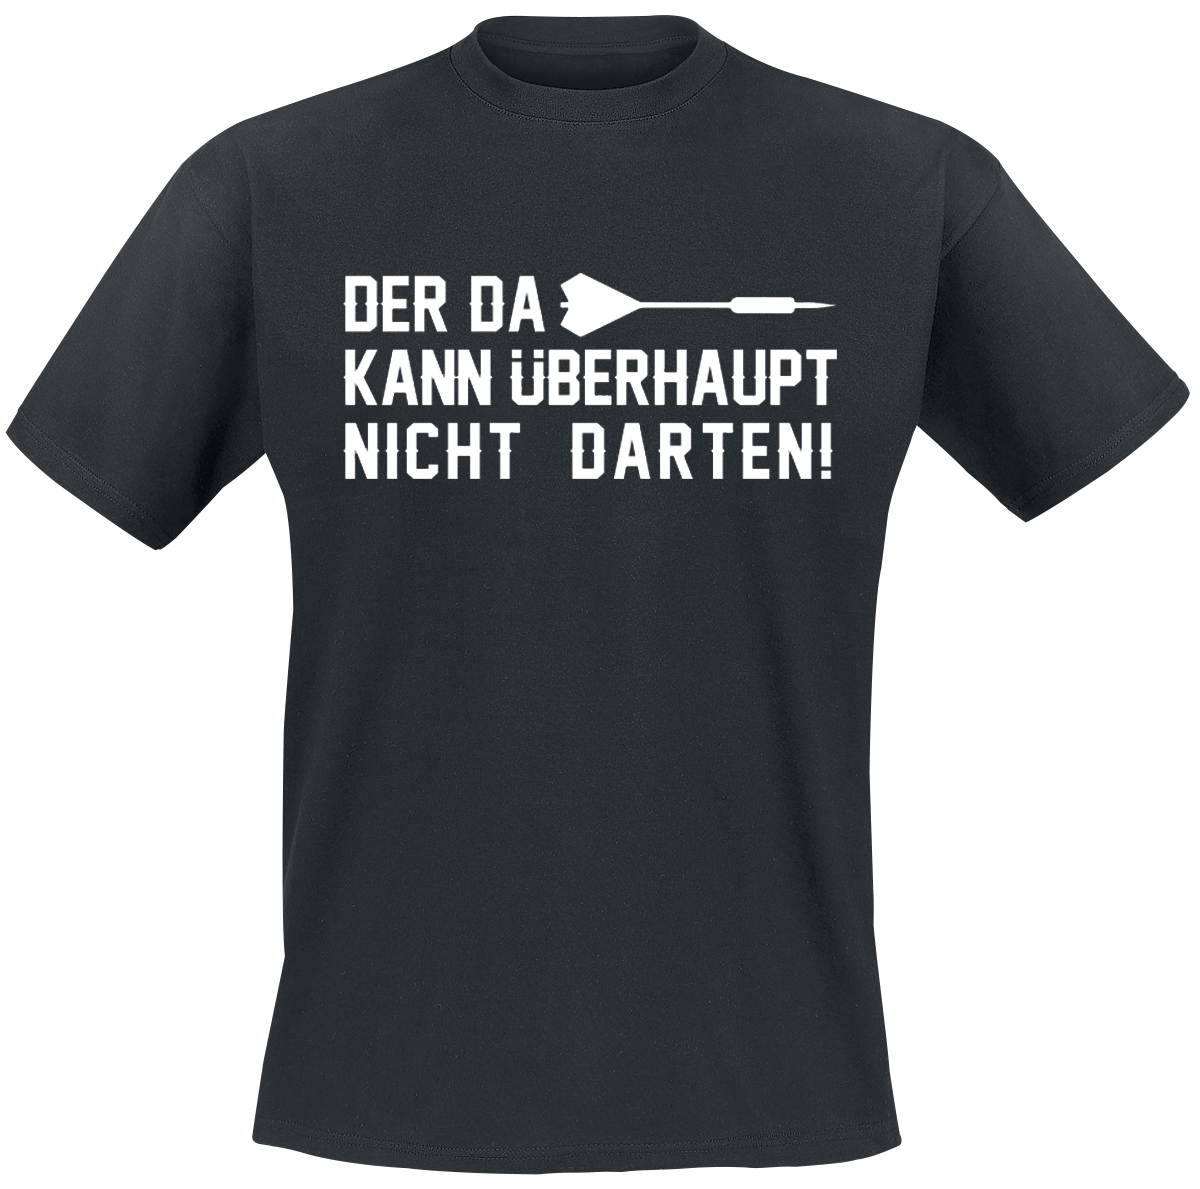 Darts - Der da kann überhaupt nicht darten! - T-Shirt - schwarz - EMP Exklusiv!